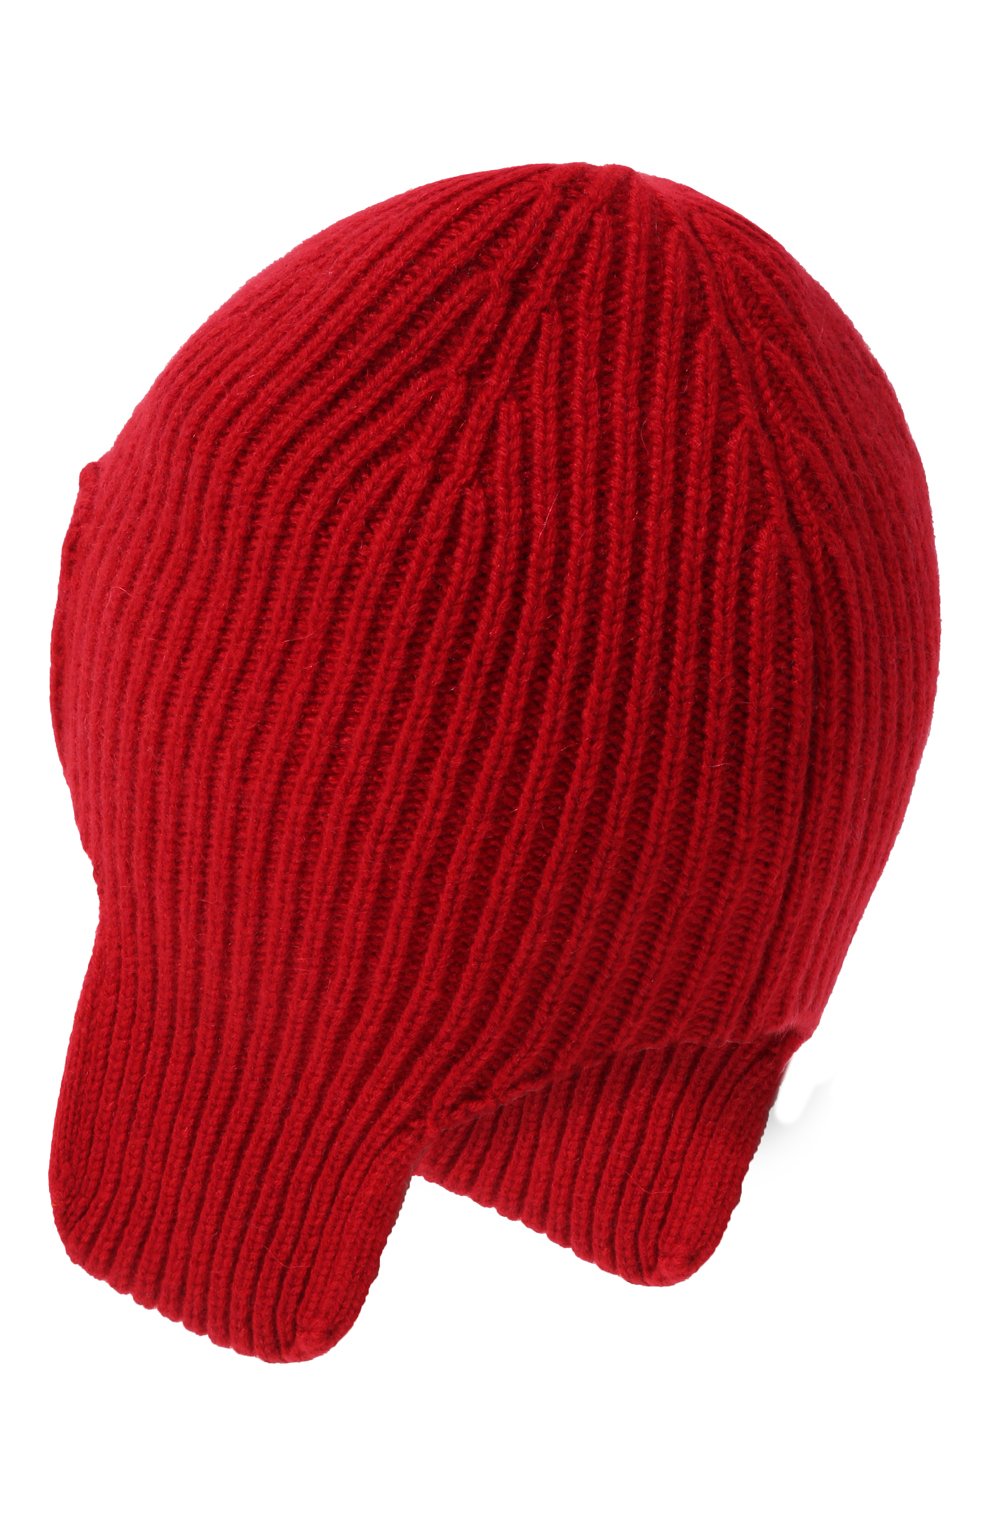 Мужская кашемировая шапка-ушанка maurice CANOE красного цвета, арт. 4004720 | Фото 2 (Материал: Текстиль, Кашемир, Шерсть; Кросс-КТ: Трикотаж)